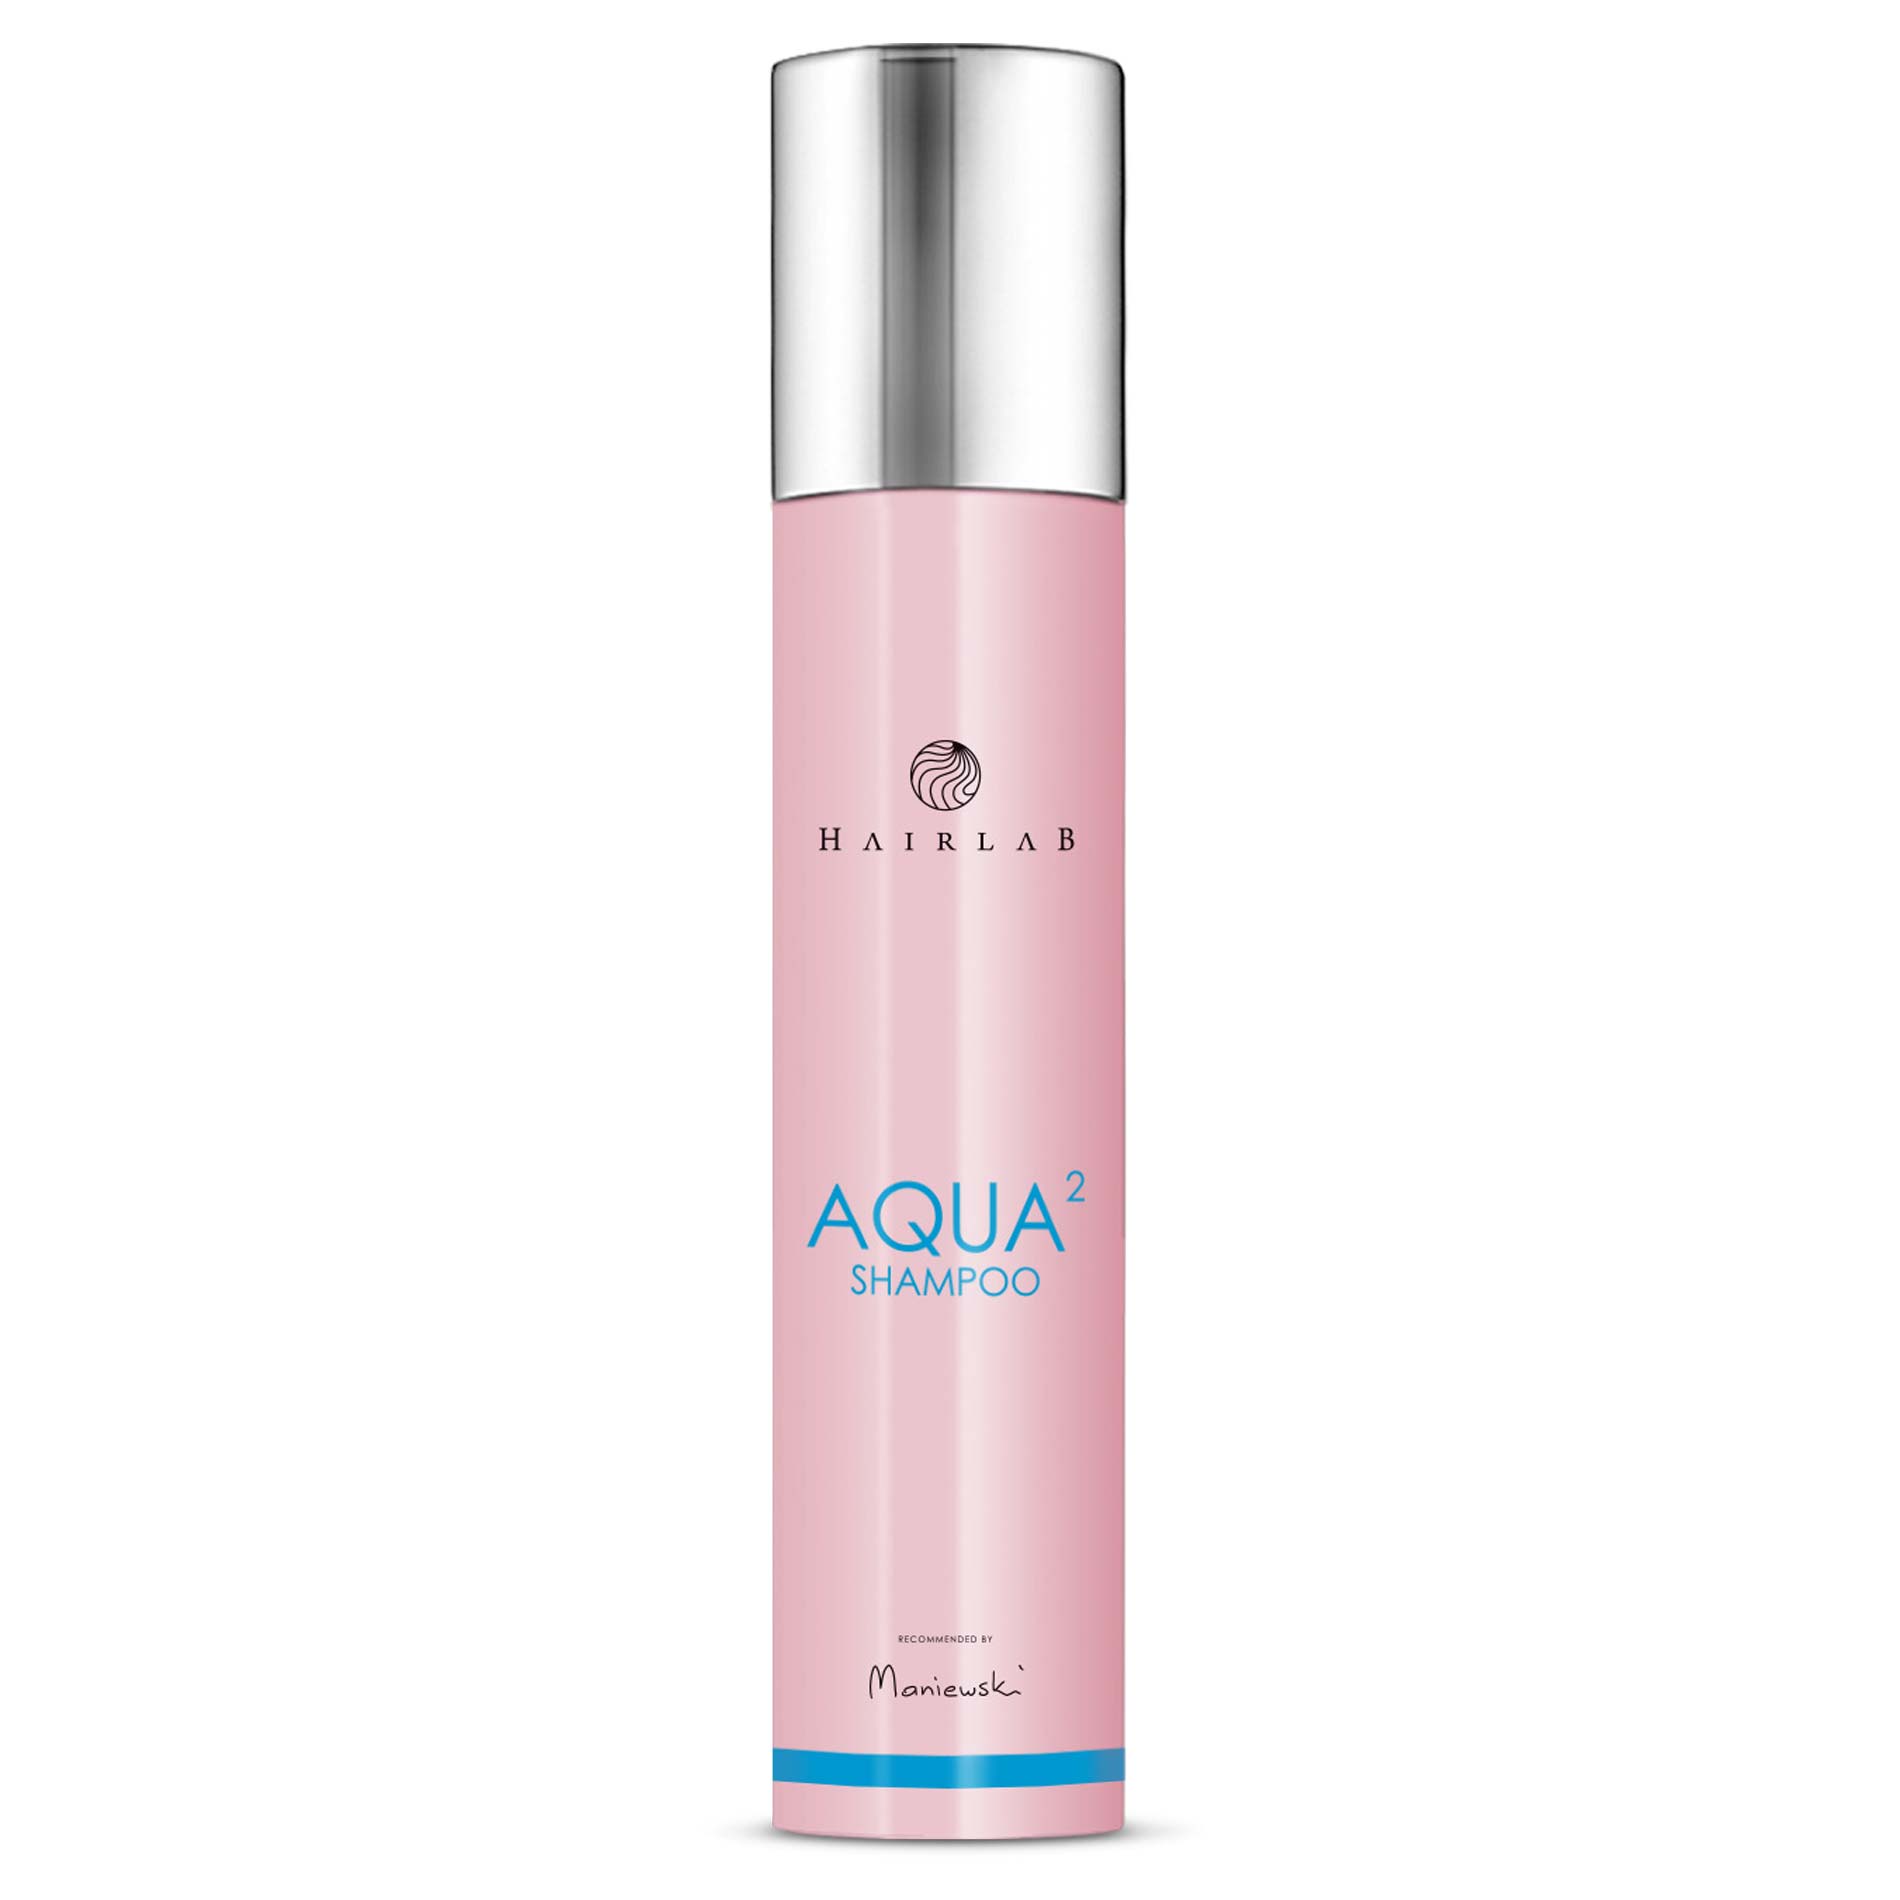 Hairlab-Aqua-2-Shampoo